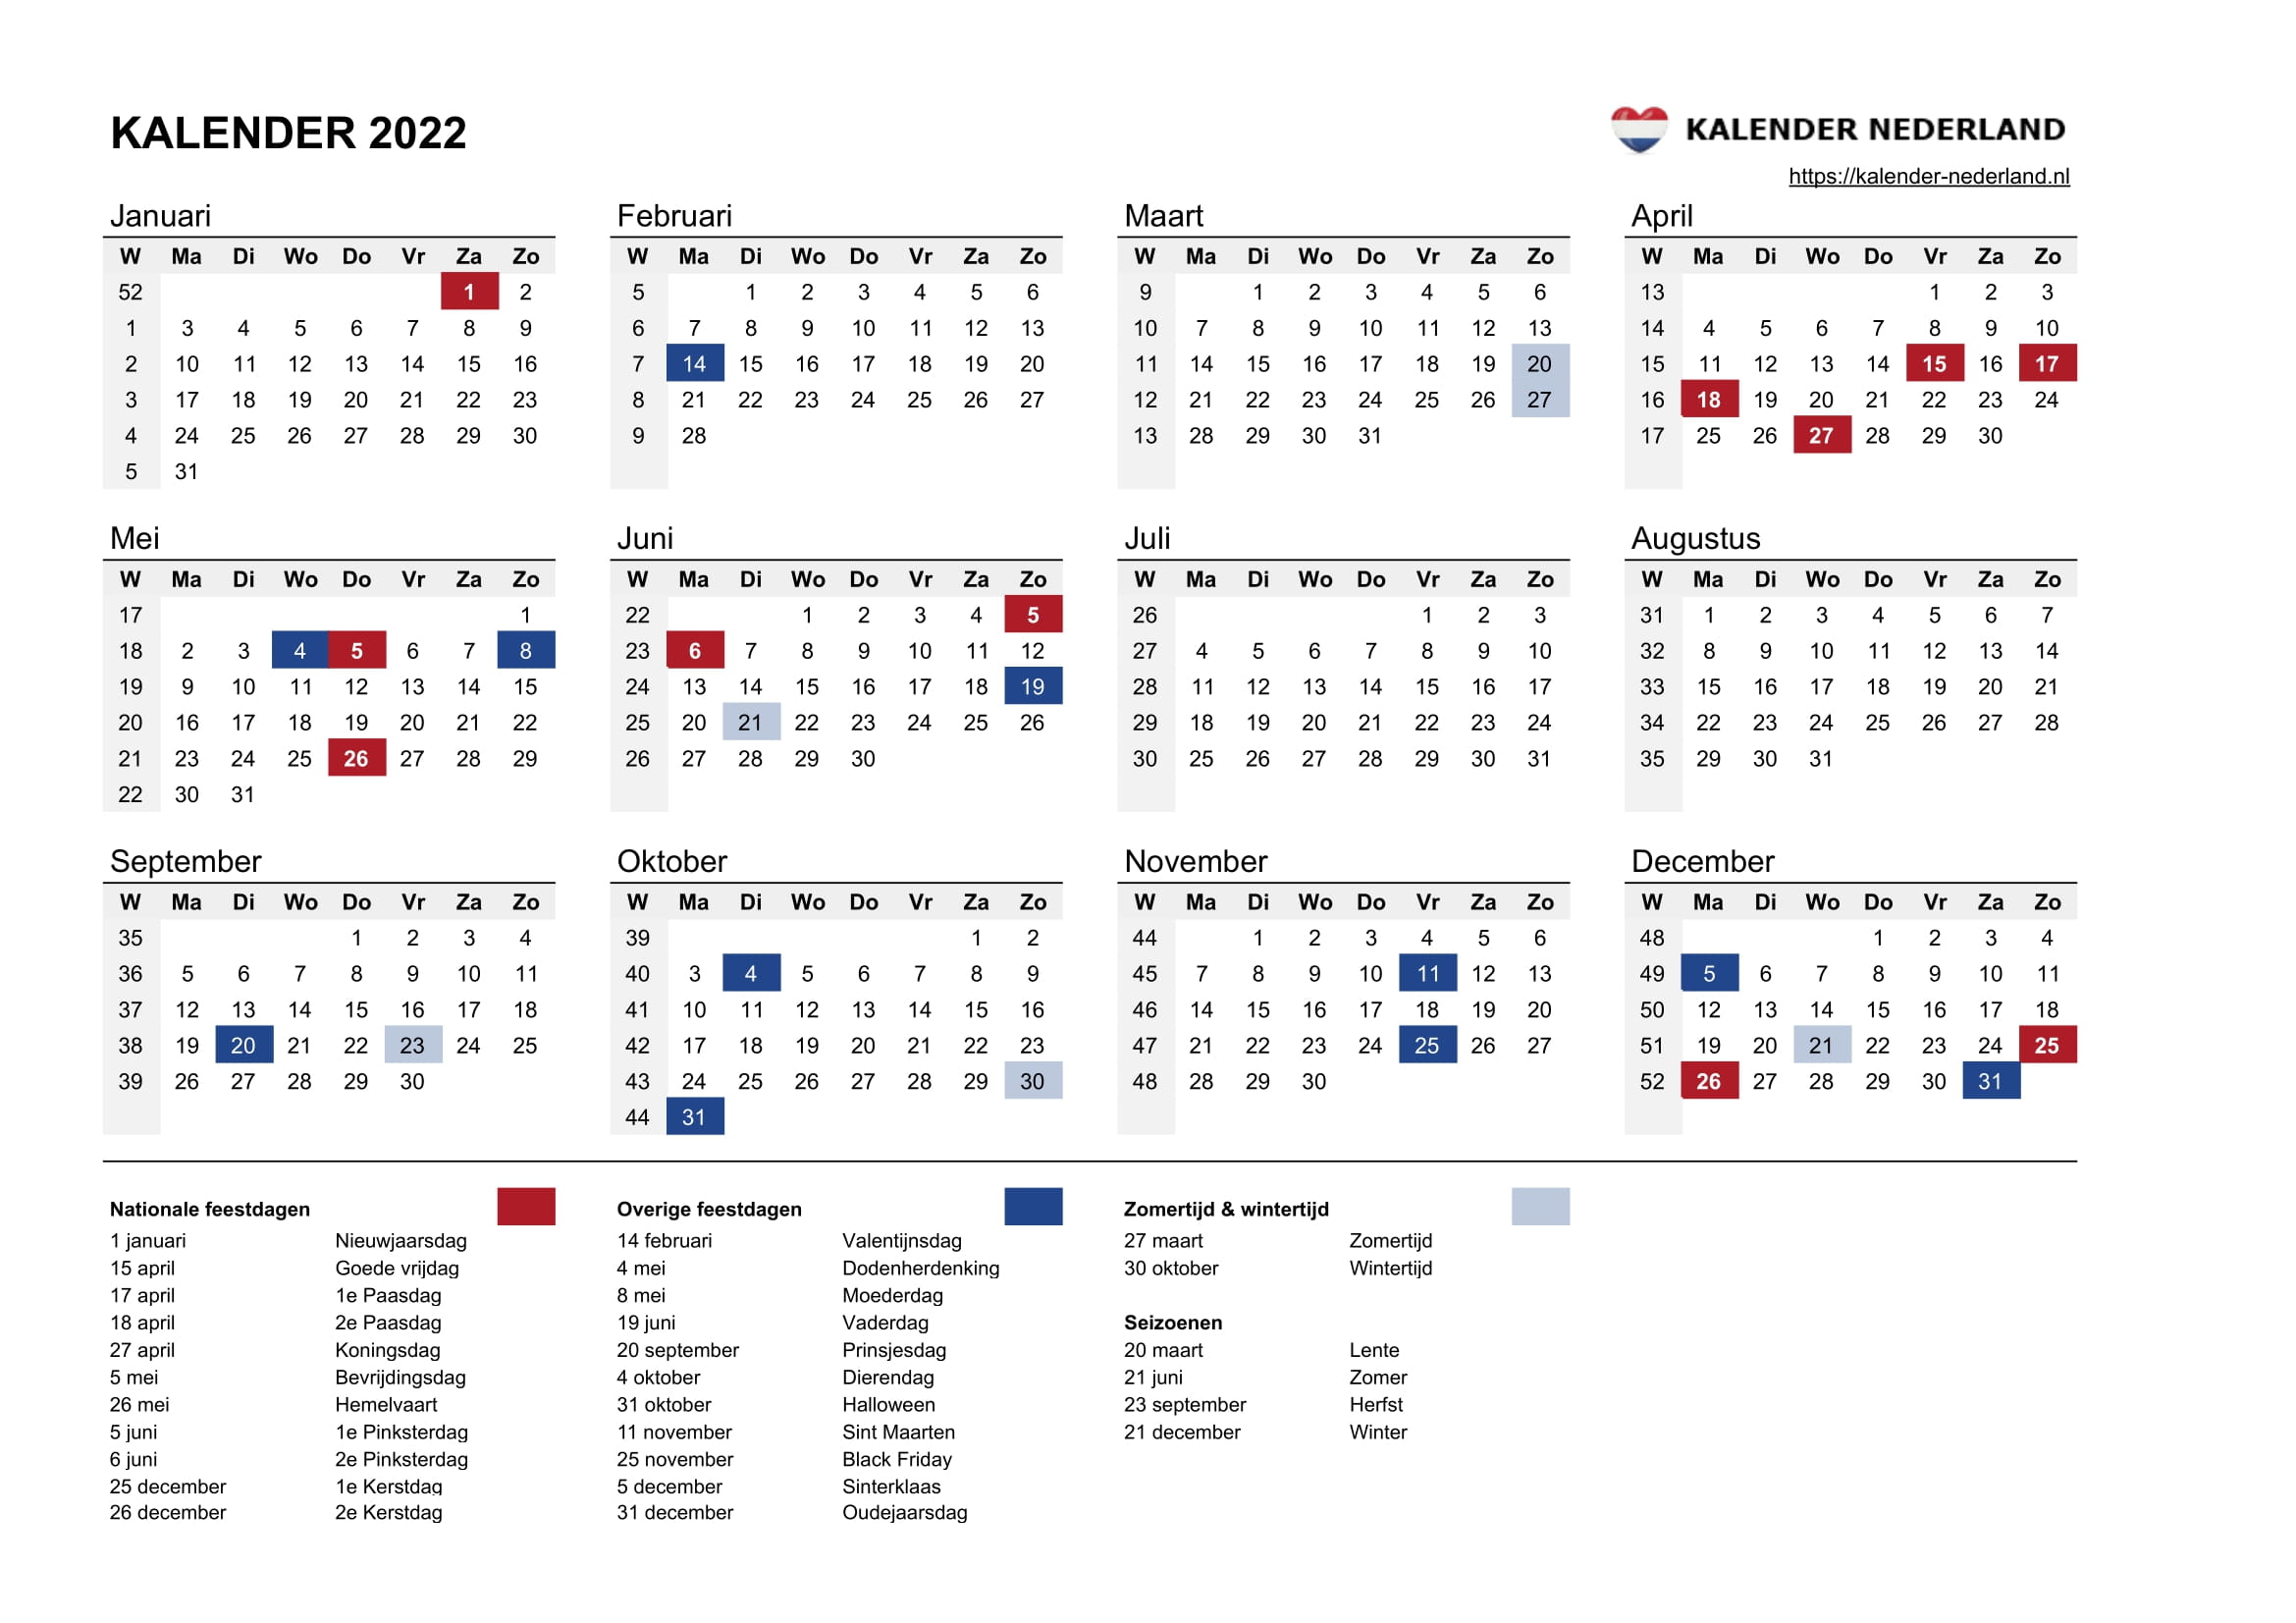 April 2022 kalender Kalender April